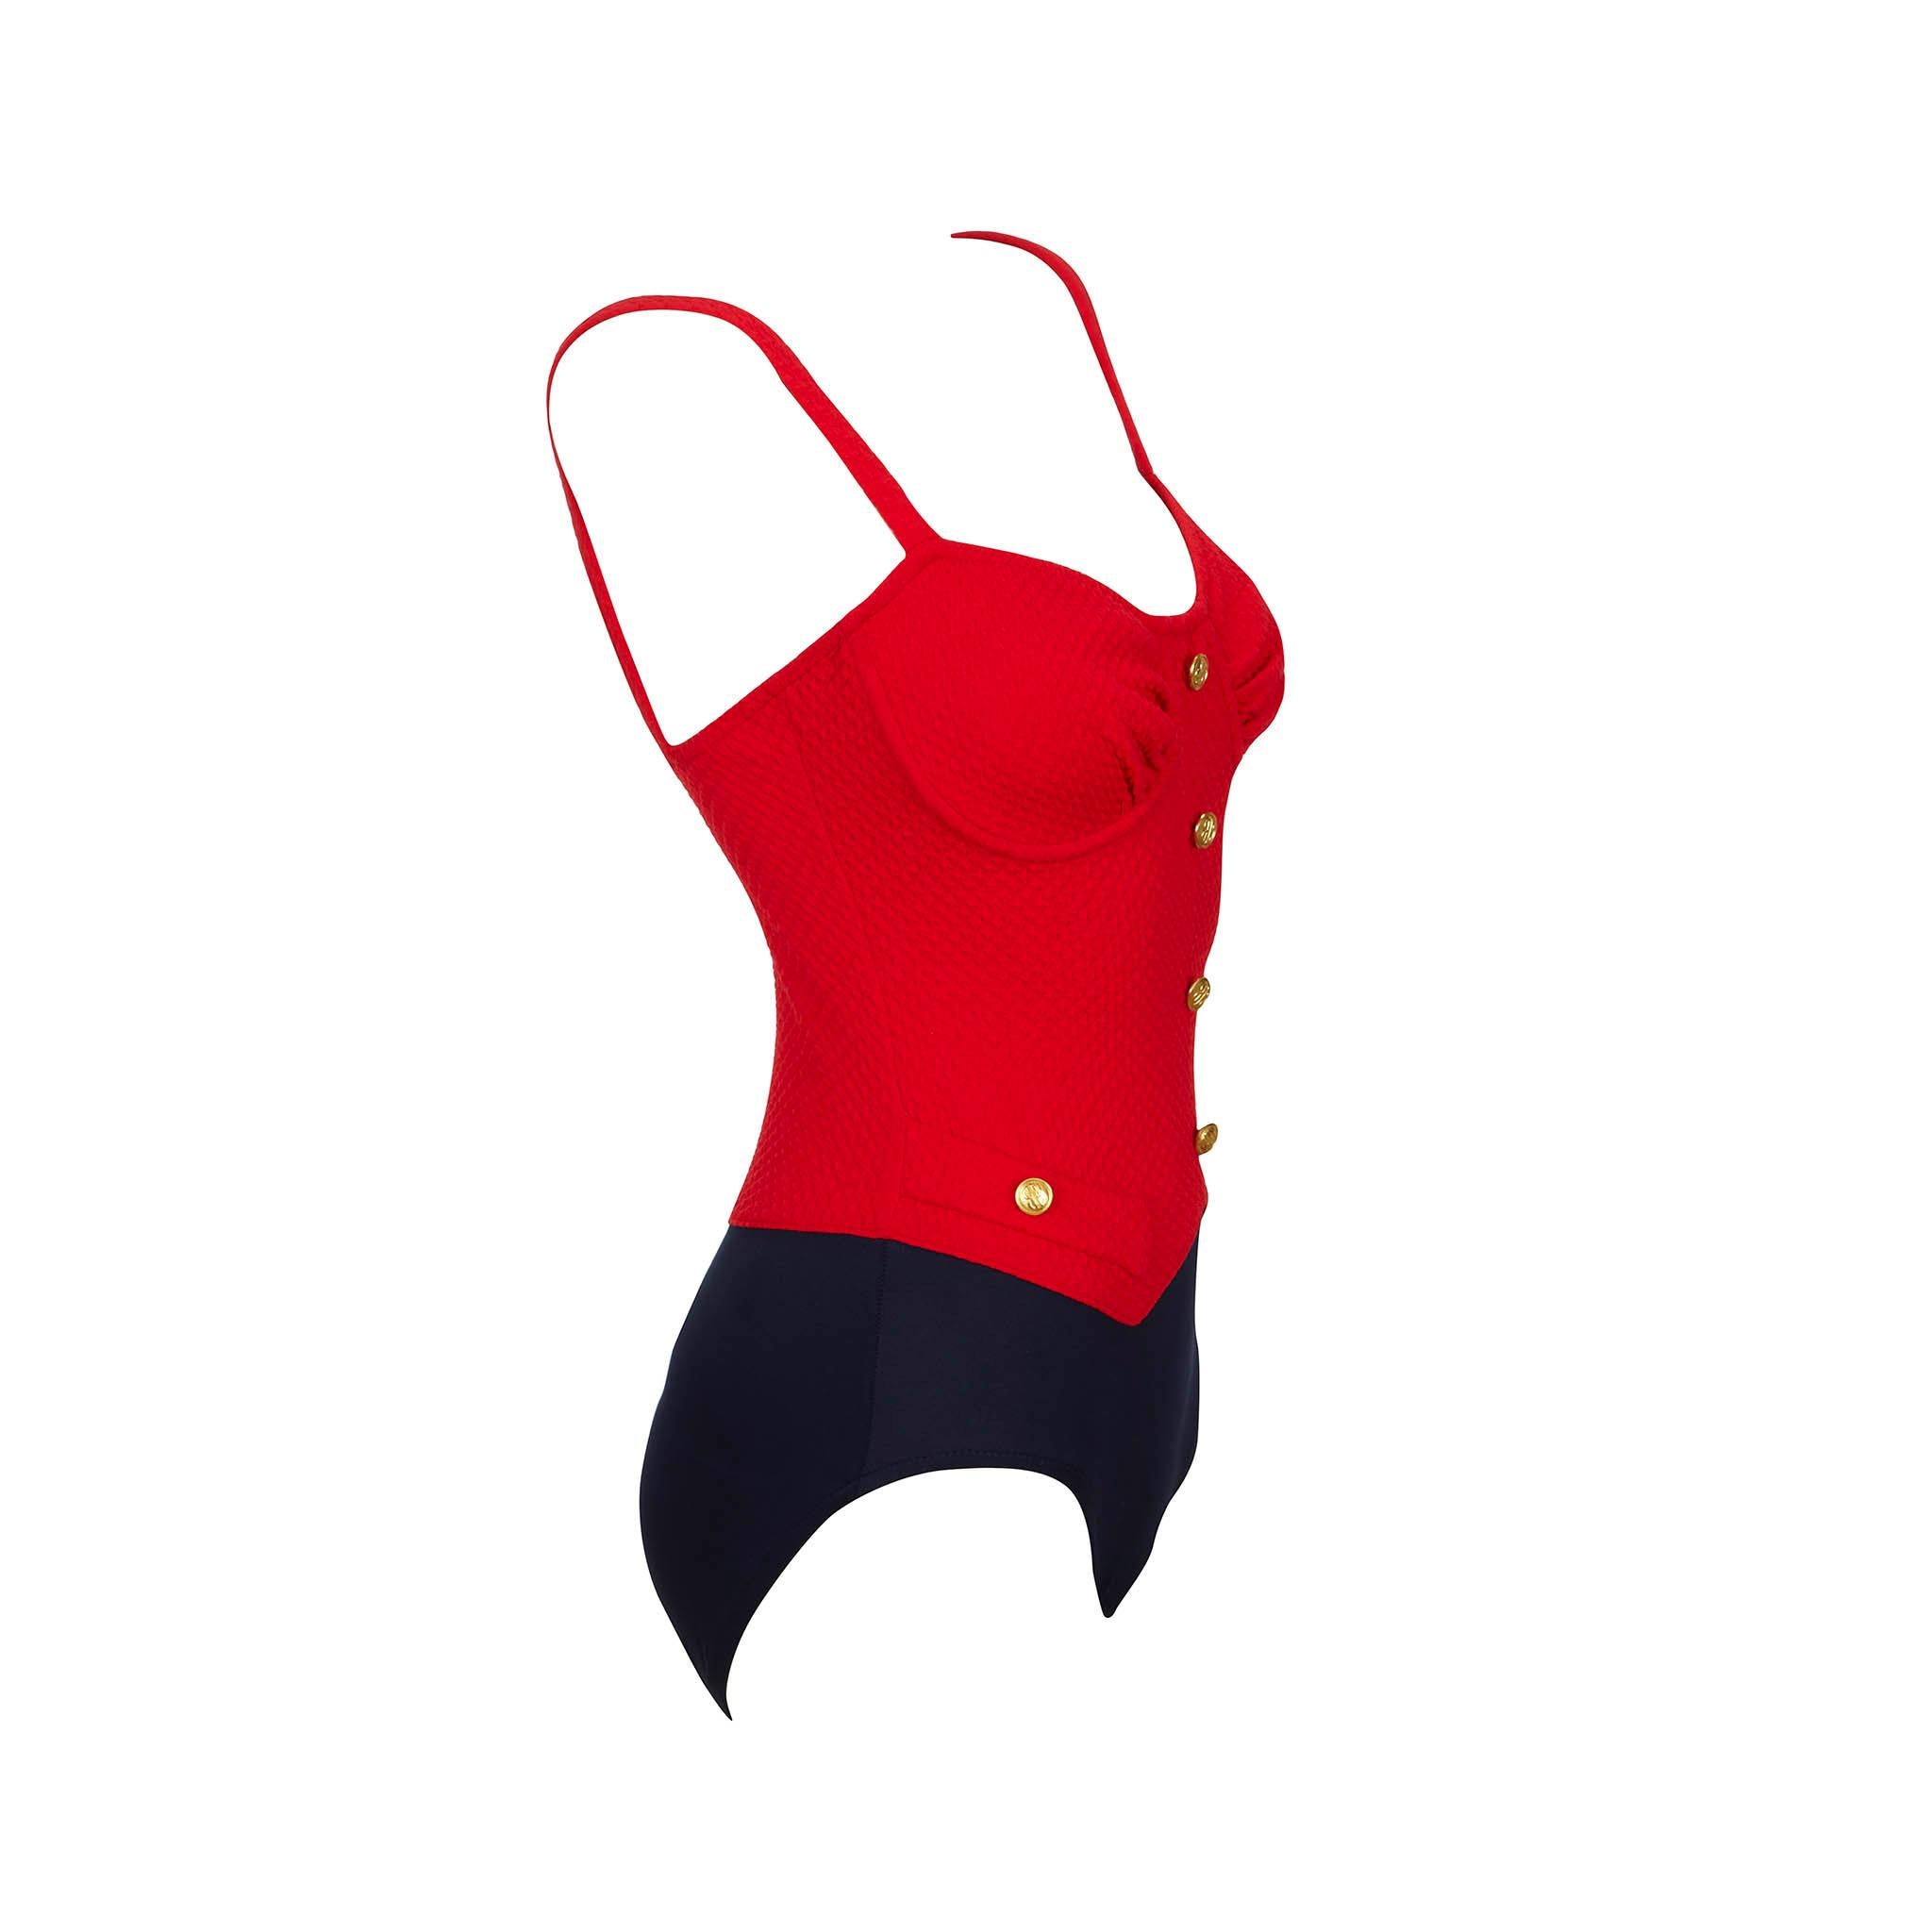 Product details: Bill Blass - Red Seersucker Lycra Swimsuit - Gold Button Detail - x 2 Front Faux Pockets - Navy Plain Lycra Knicker
Label: Bill Blass
Era: c.1980
Fabric Content: Lycra
Size: UK 10
Bust: 28” to 37”
Min Waist: 24” to 32”
Min Hips: 30”